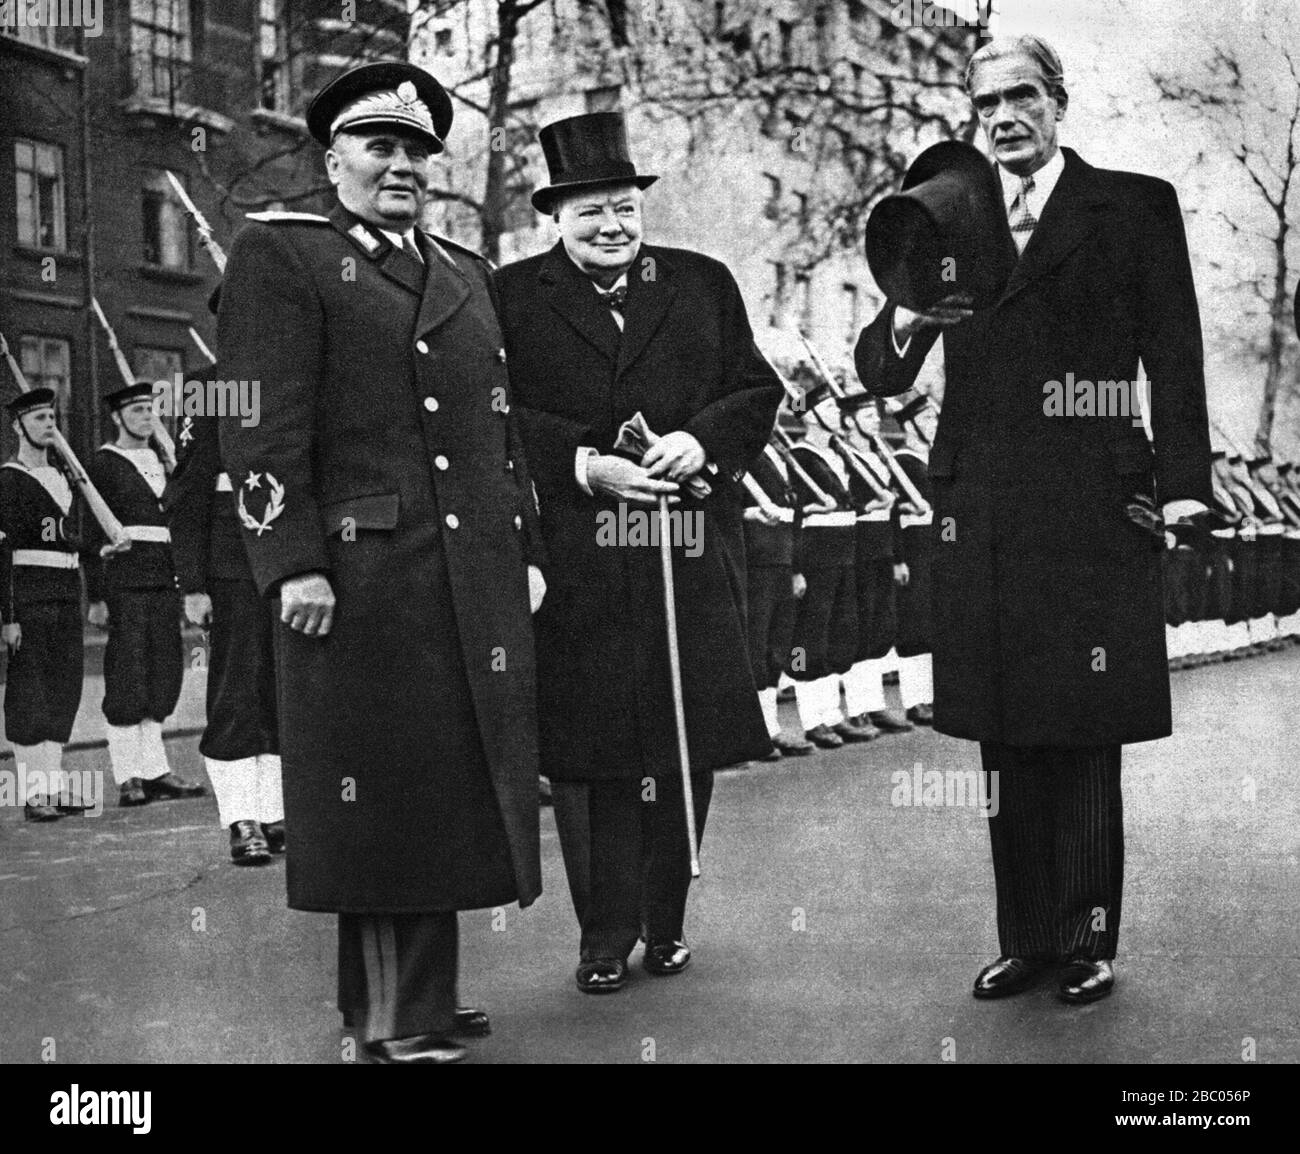 Winston Churchill et Anthony Eden, secrétaire aux Affaires étrangères, souhaitent la bienvenue au maréchal Tito de Yougoslavie pour des entretiens à Londres. 16 mars 1953 Banque D'Images